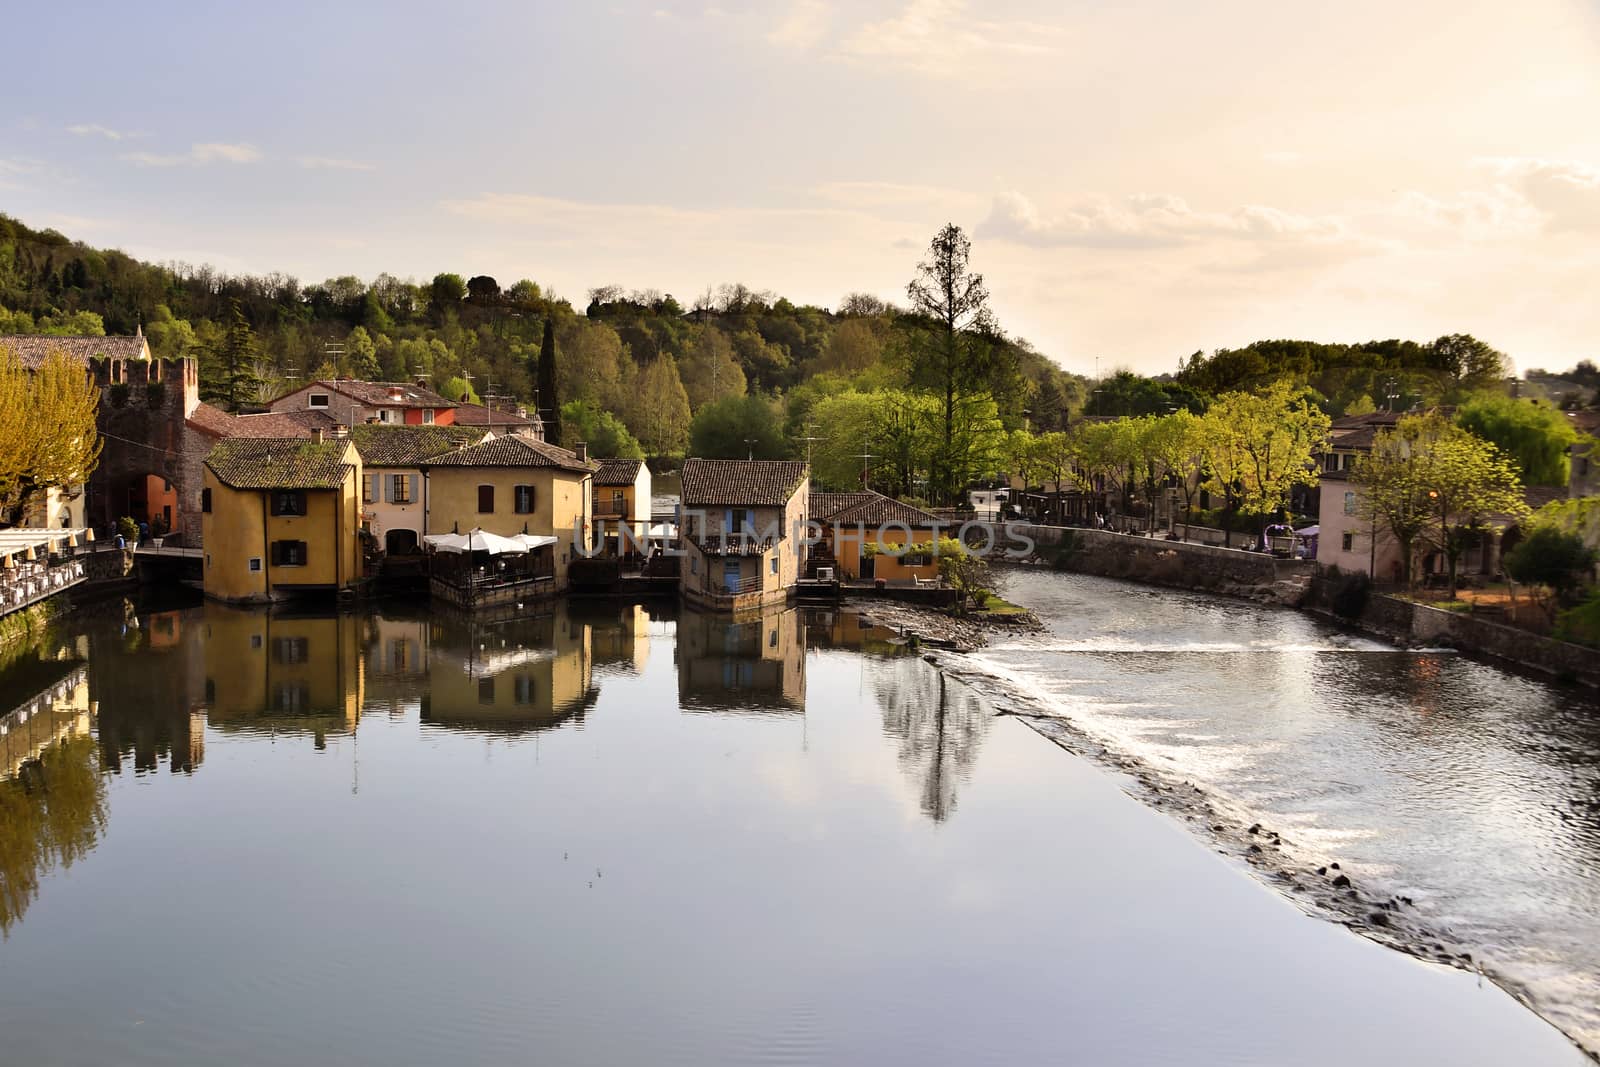 Il paesino di Borghetto sul Mincio,si rispecchia tranquillo nelle calme acque del fiume.